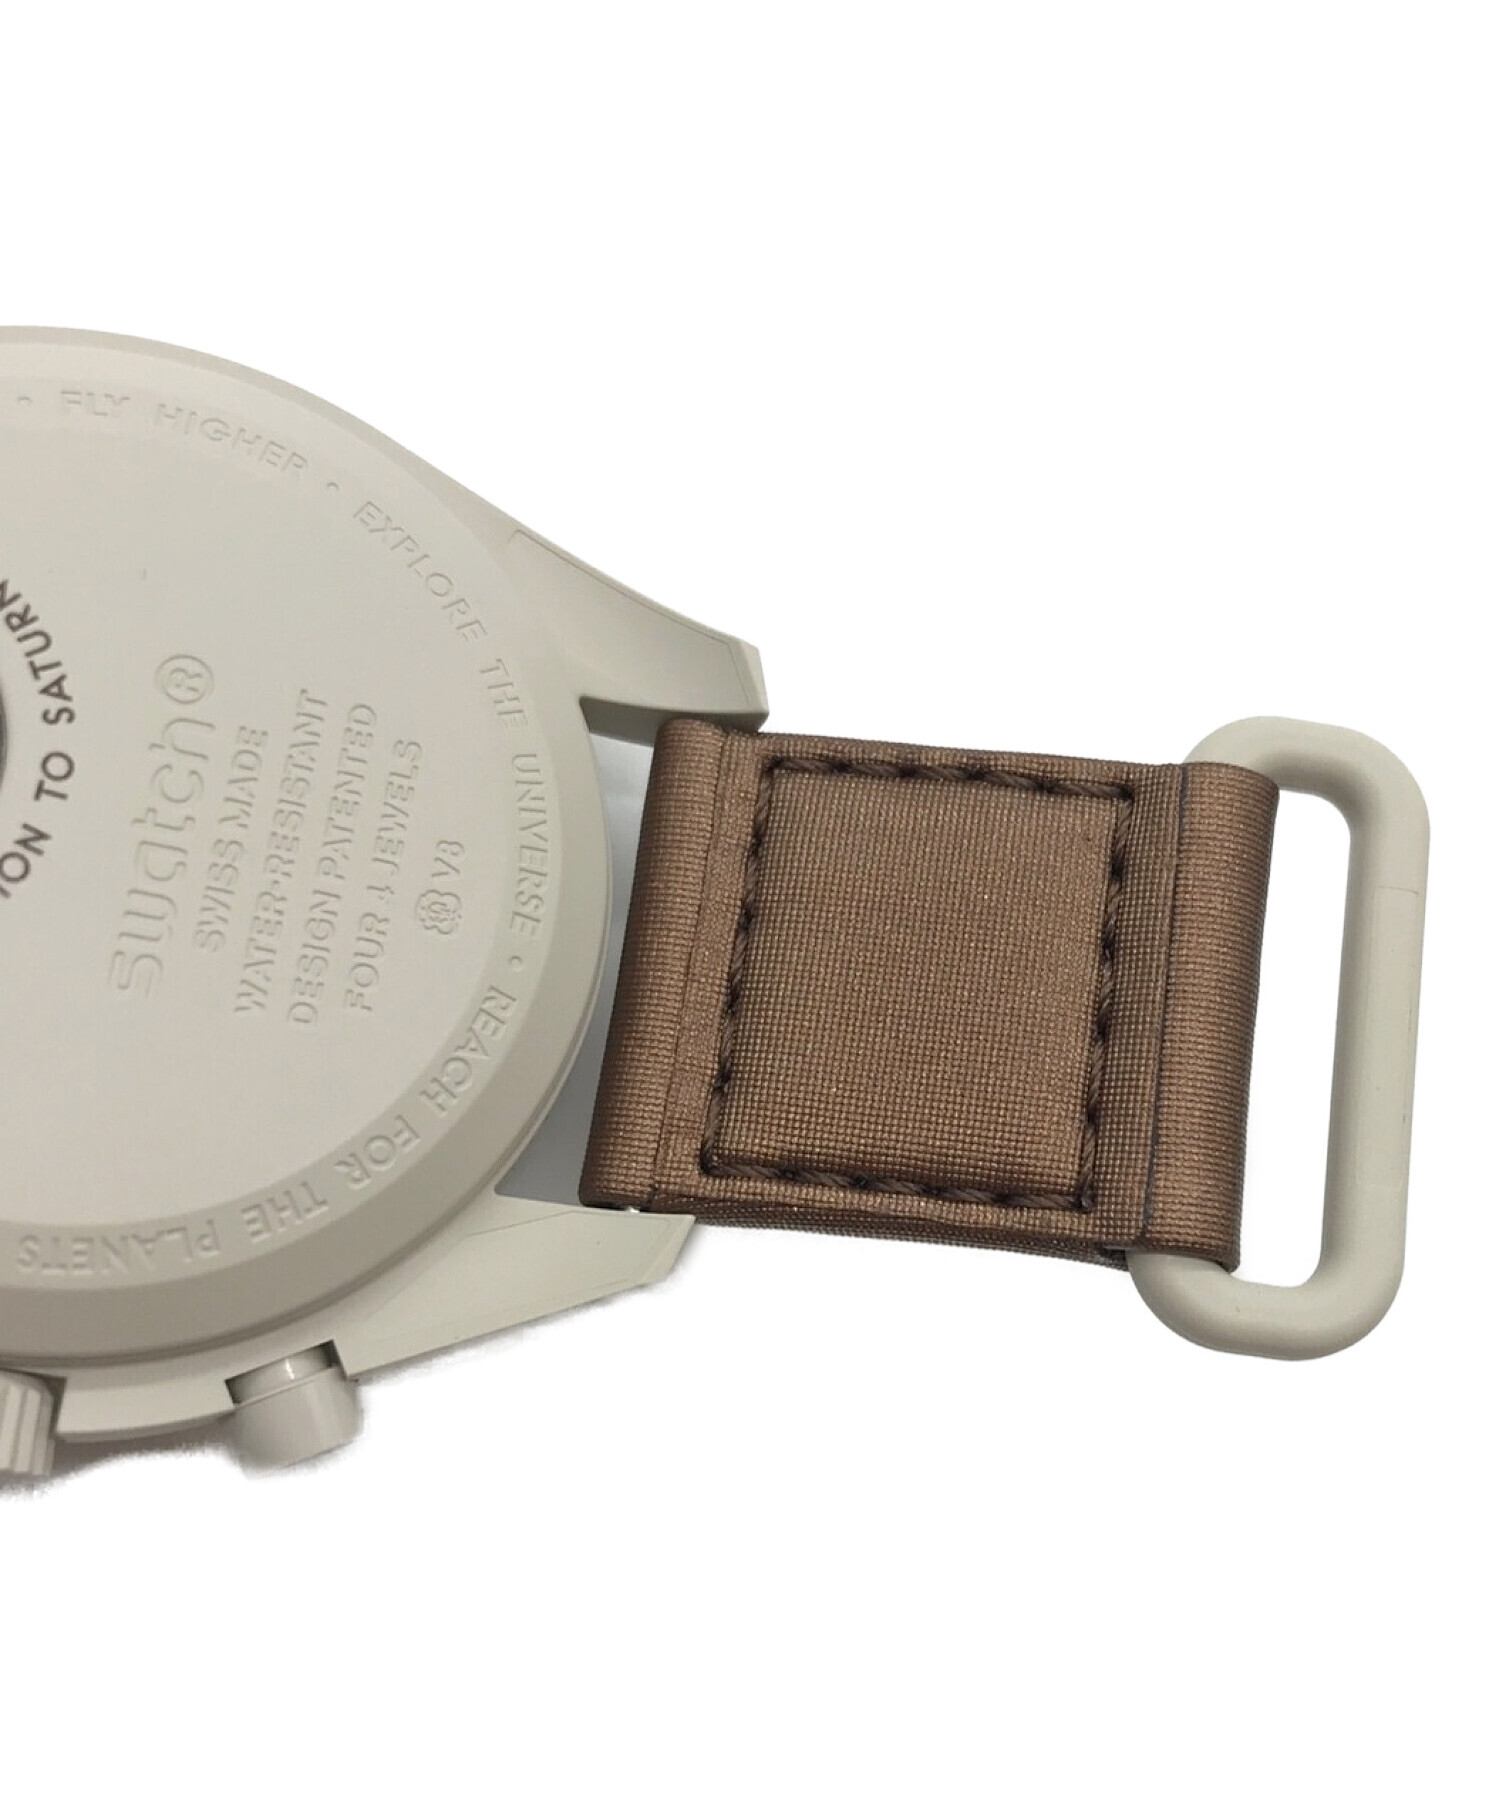 OMEGA×Swatch (オメガ×スウォッチ) Mission to Saturn（ミッション トゥ サターン）　腕時計　クォーツ  サイズ:実寸サイズにてご確認ください。